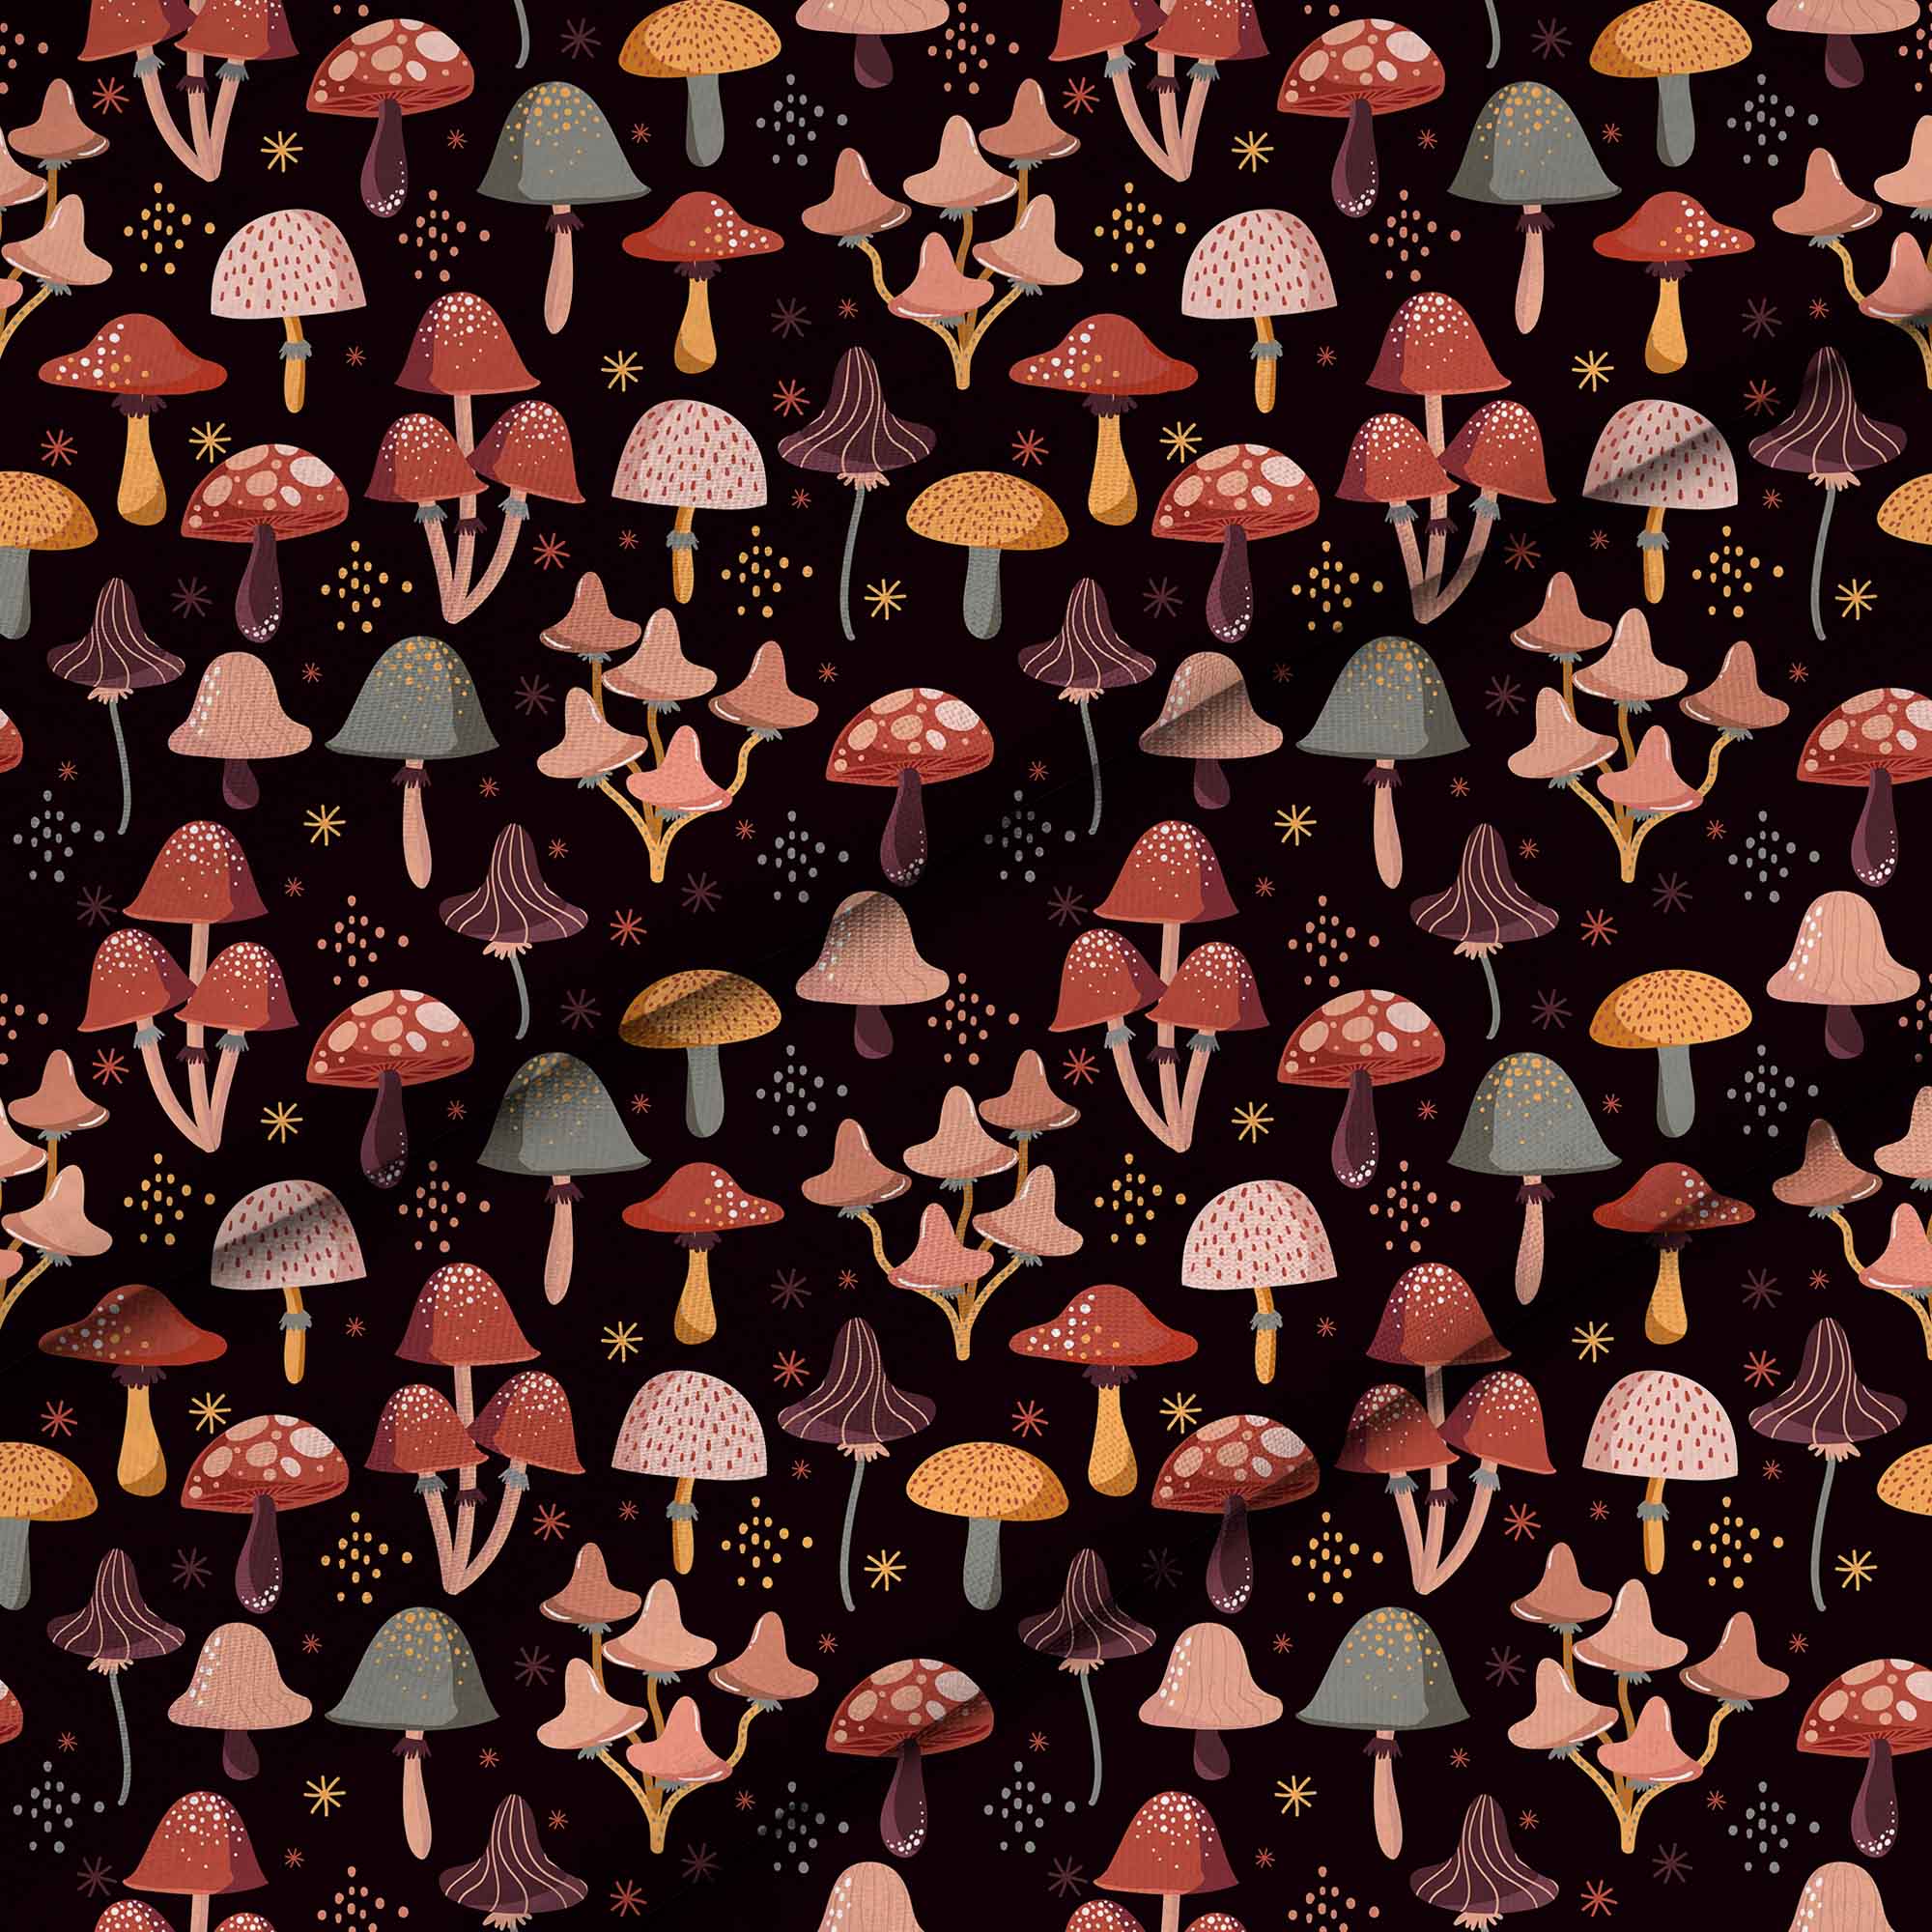 More Mushroom